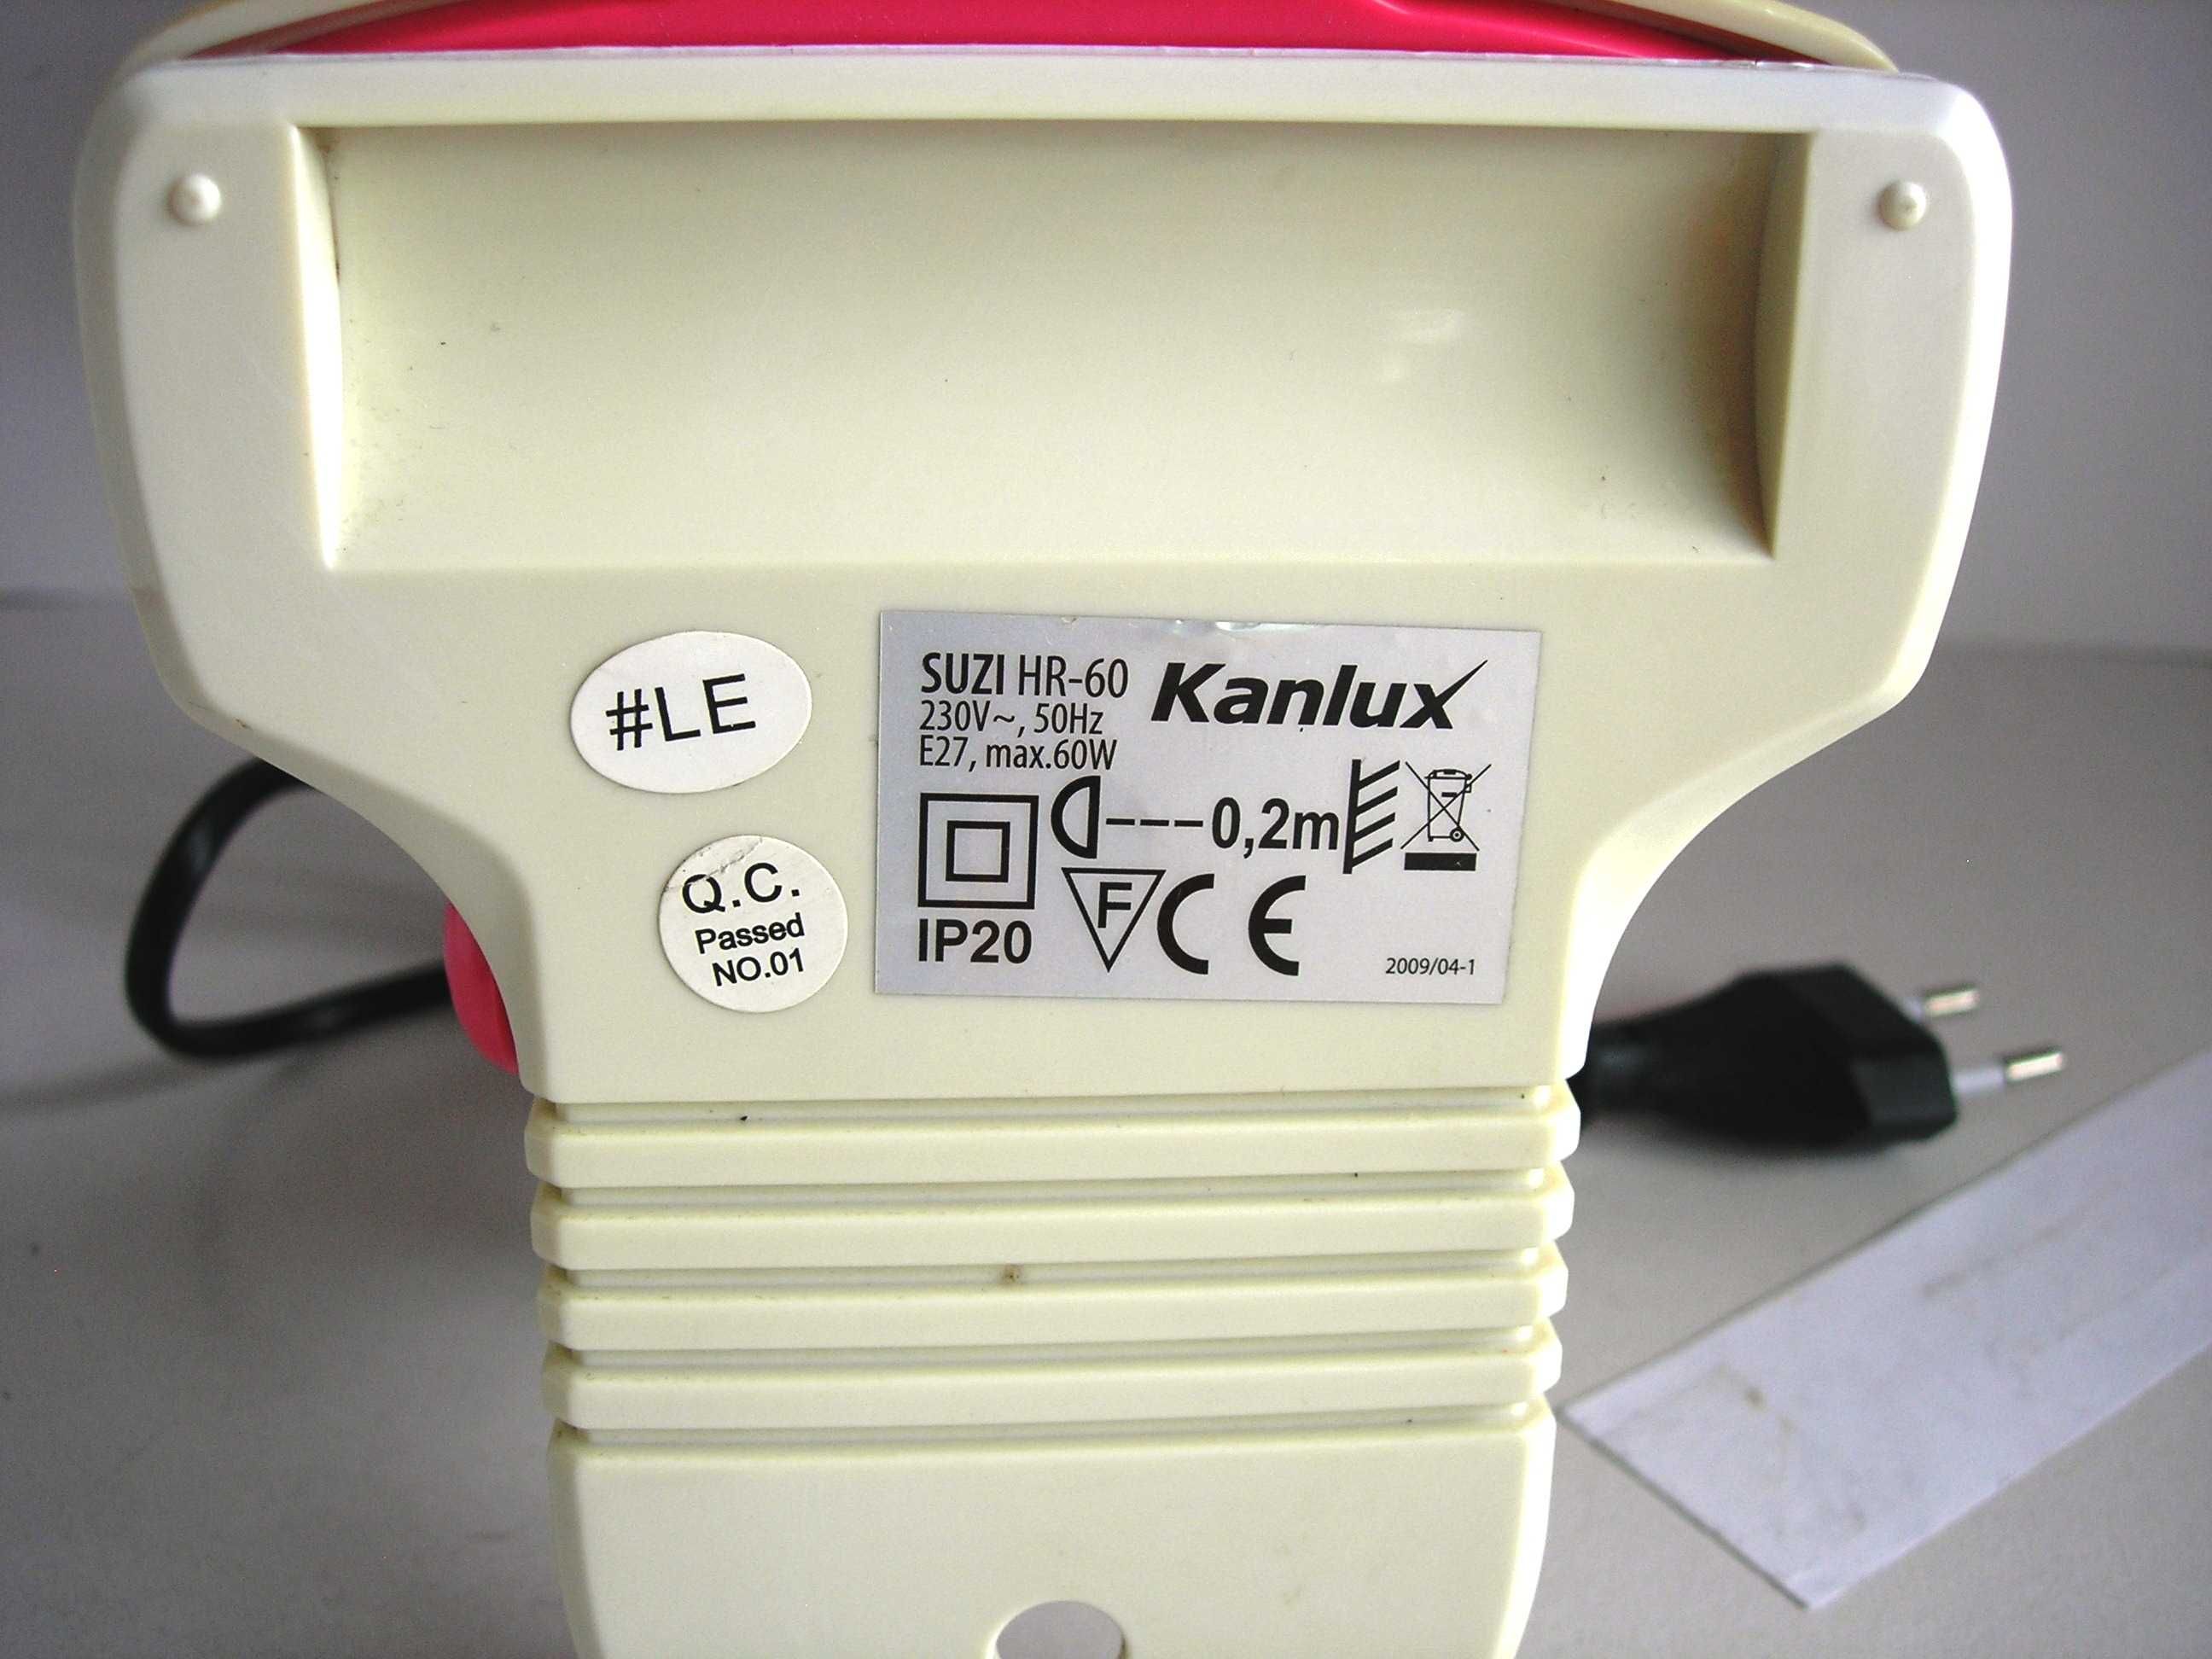 Lampka na biurko półkę Kanlux Suzi HR-60